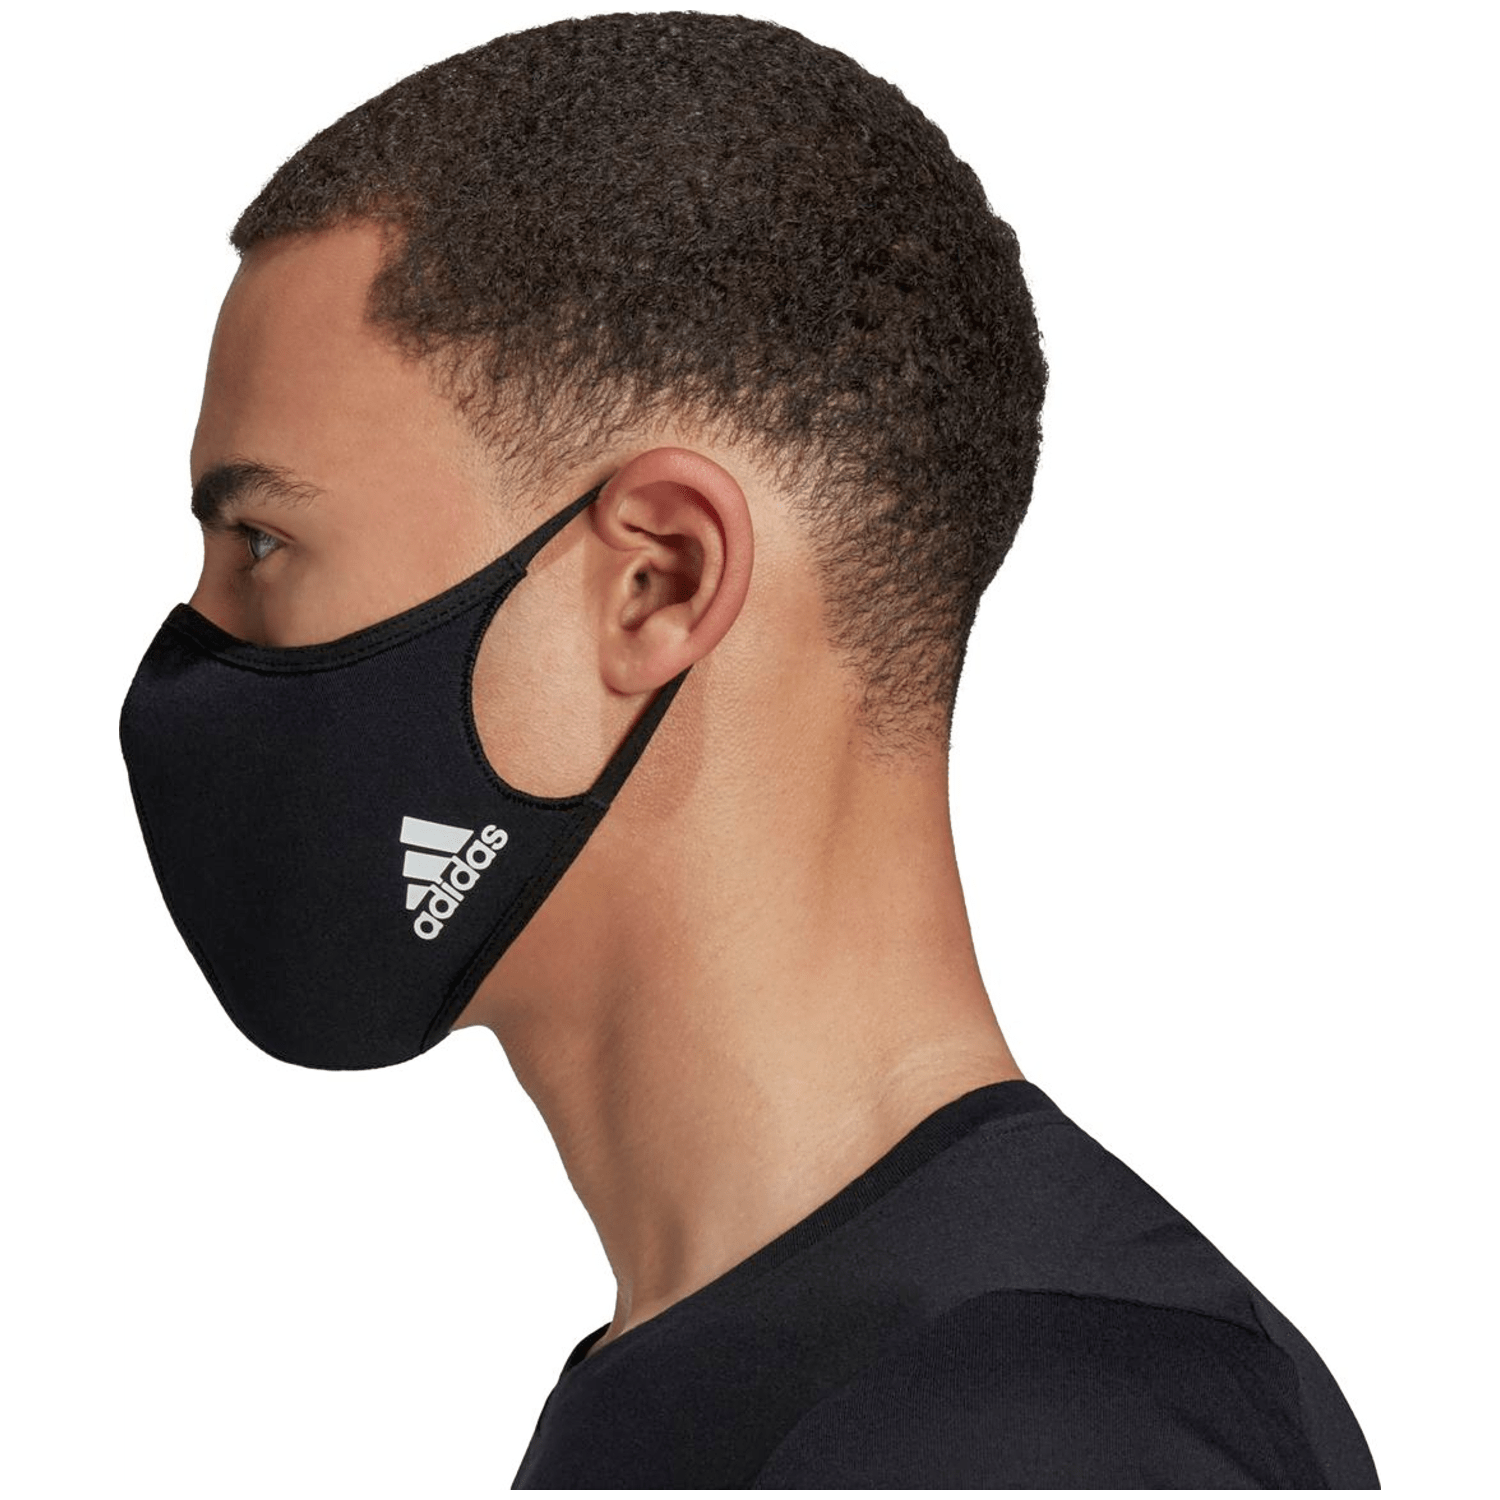 Adidas Face Cover 3er-Pack M/L Herren